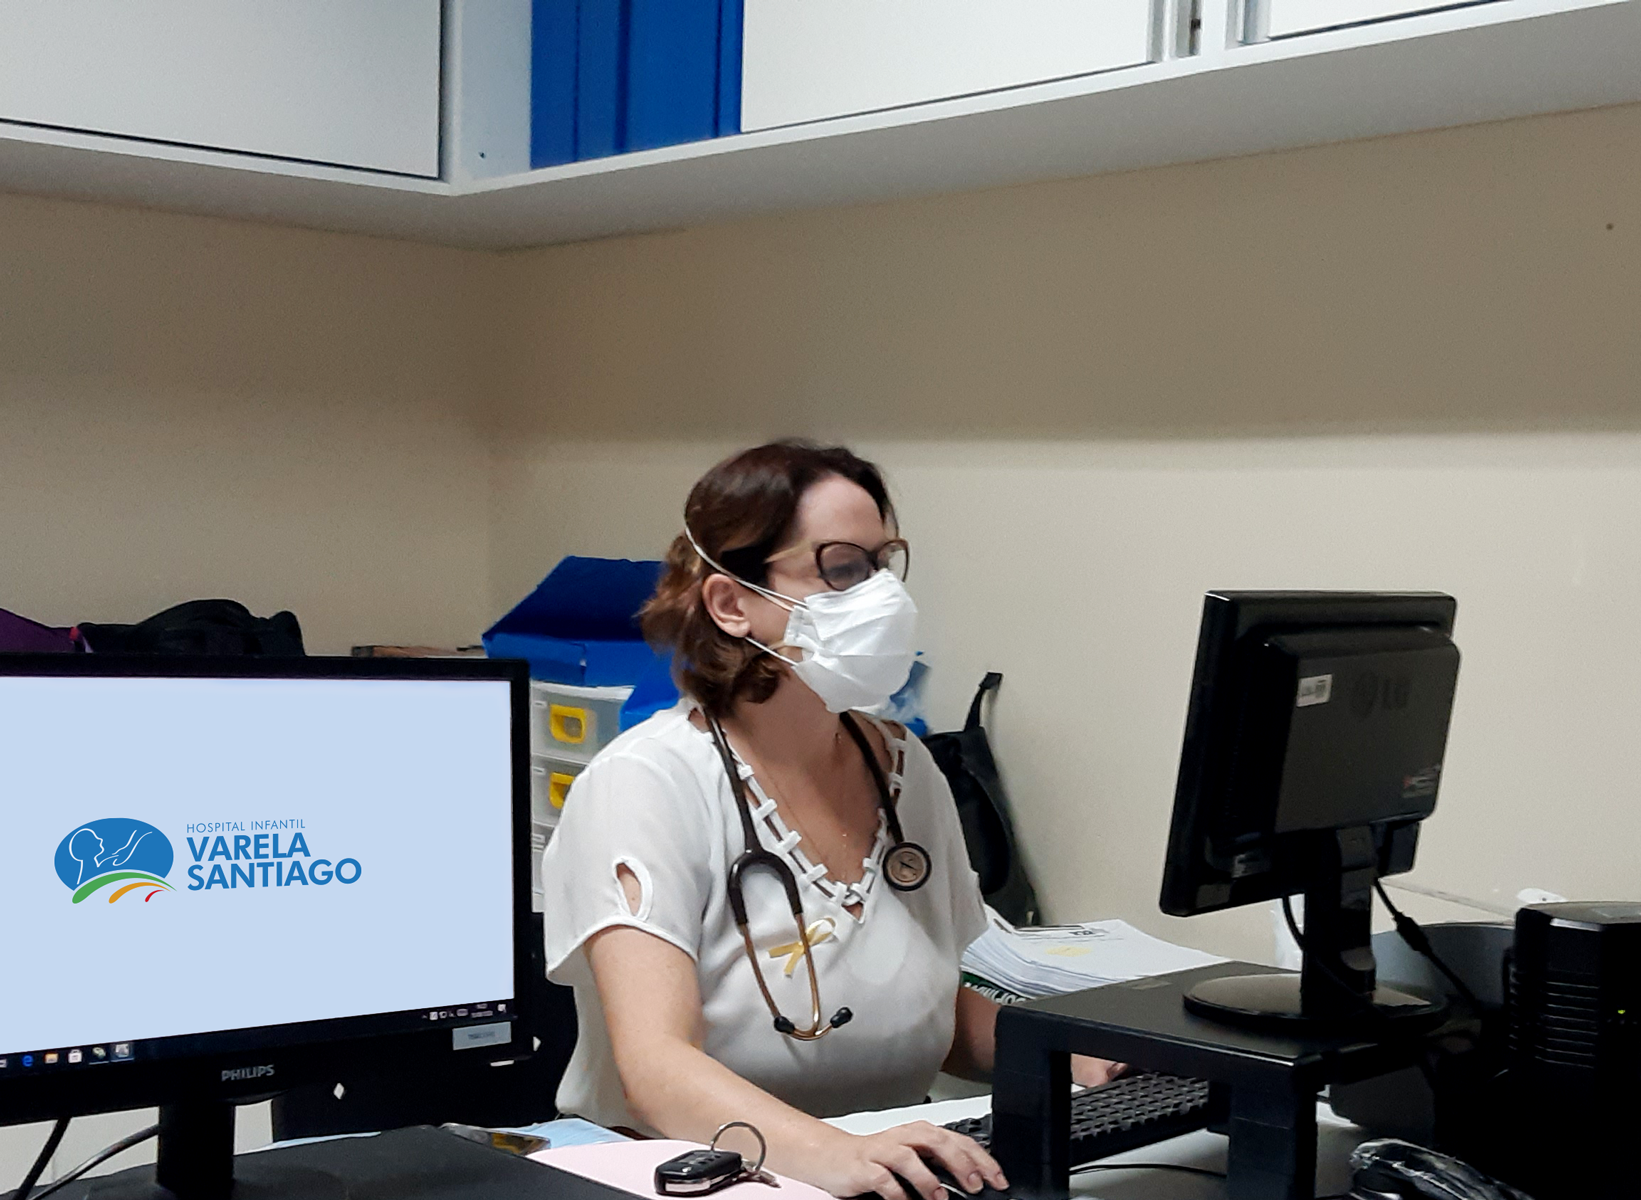 Setembro Dourado: Oncologista do Varela Santiago reforça importância da prevenção mesmo em tempos de pandemia